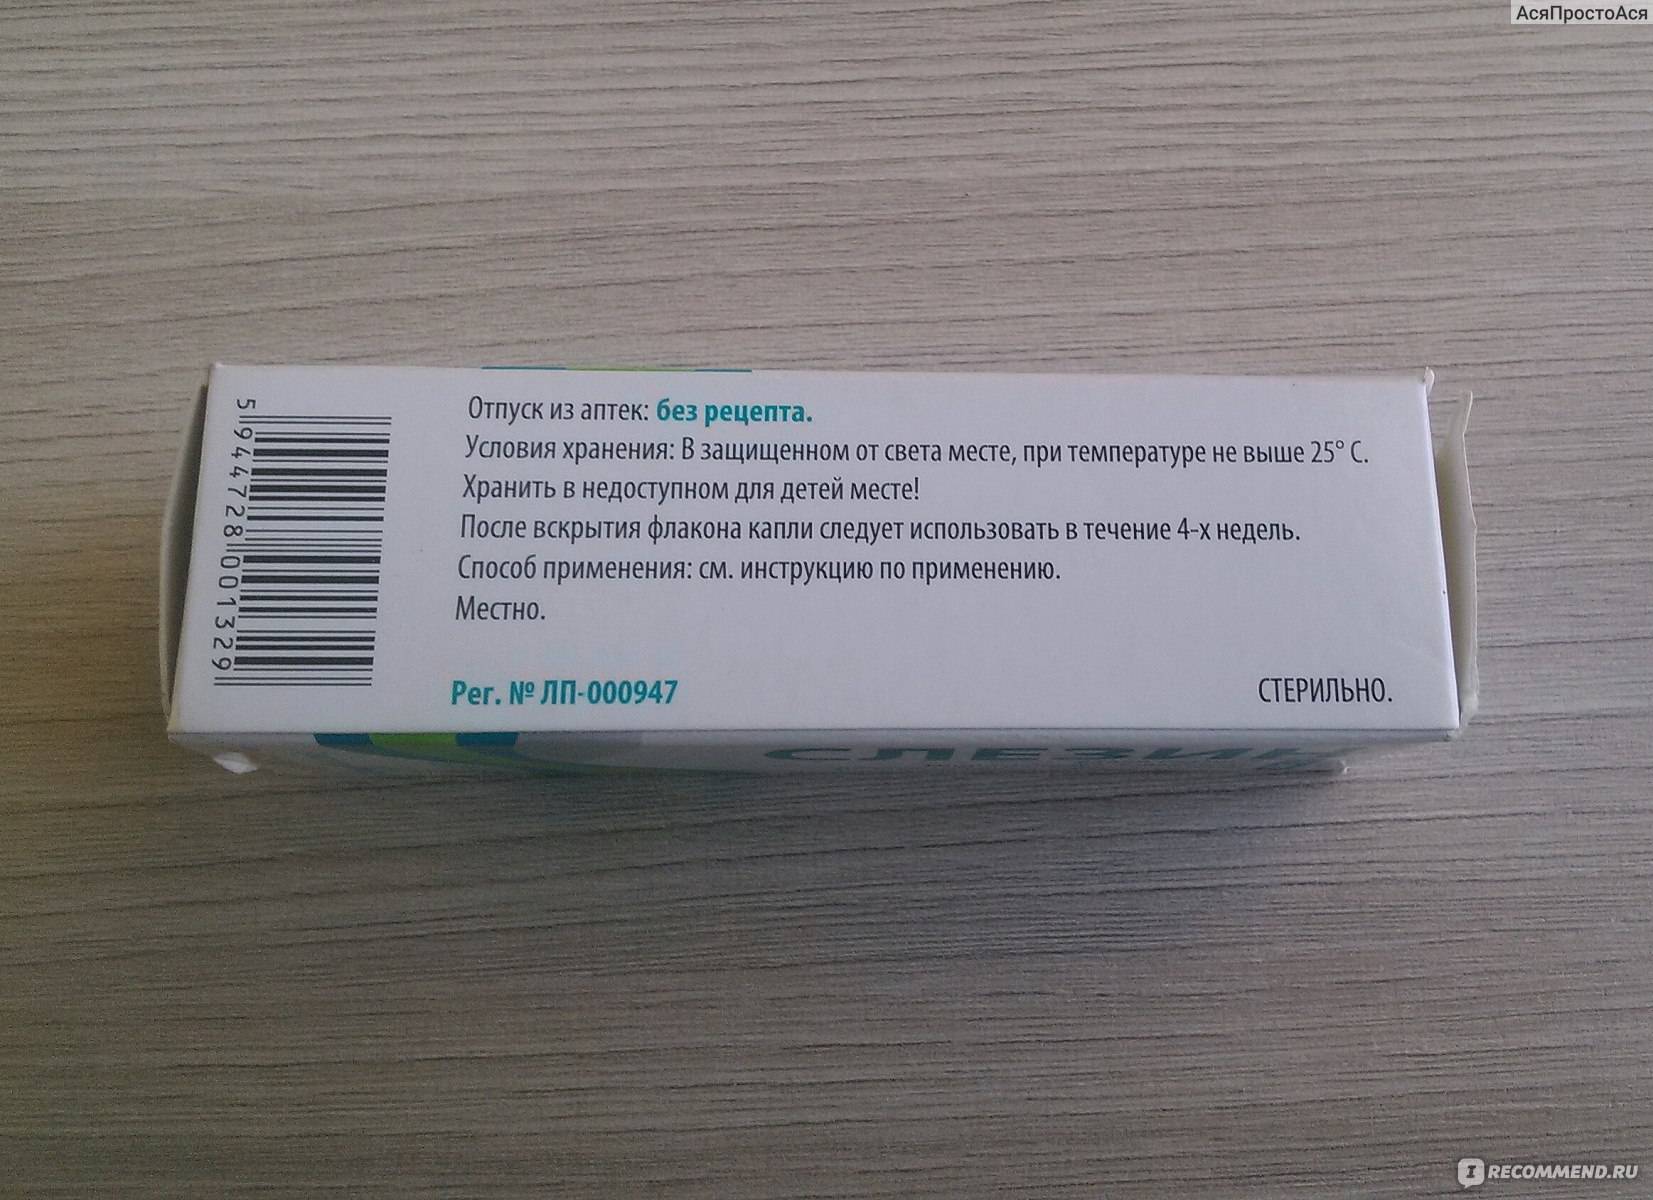 Искусственная слеза: инструкция, отзывы, аналоги, цена в аптеках - медицинский портал medcentre24.ru